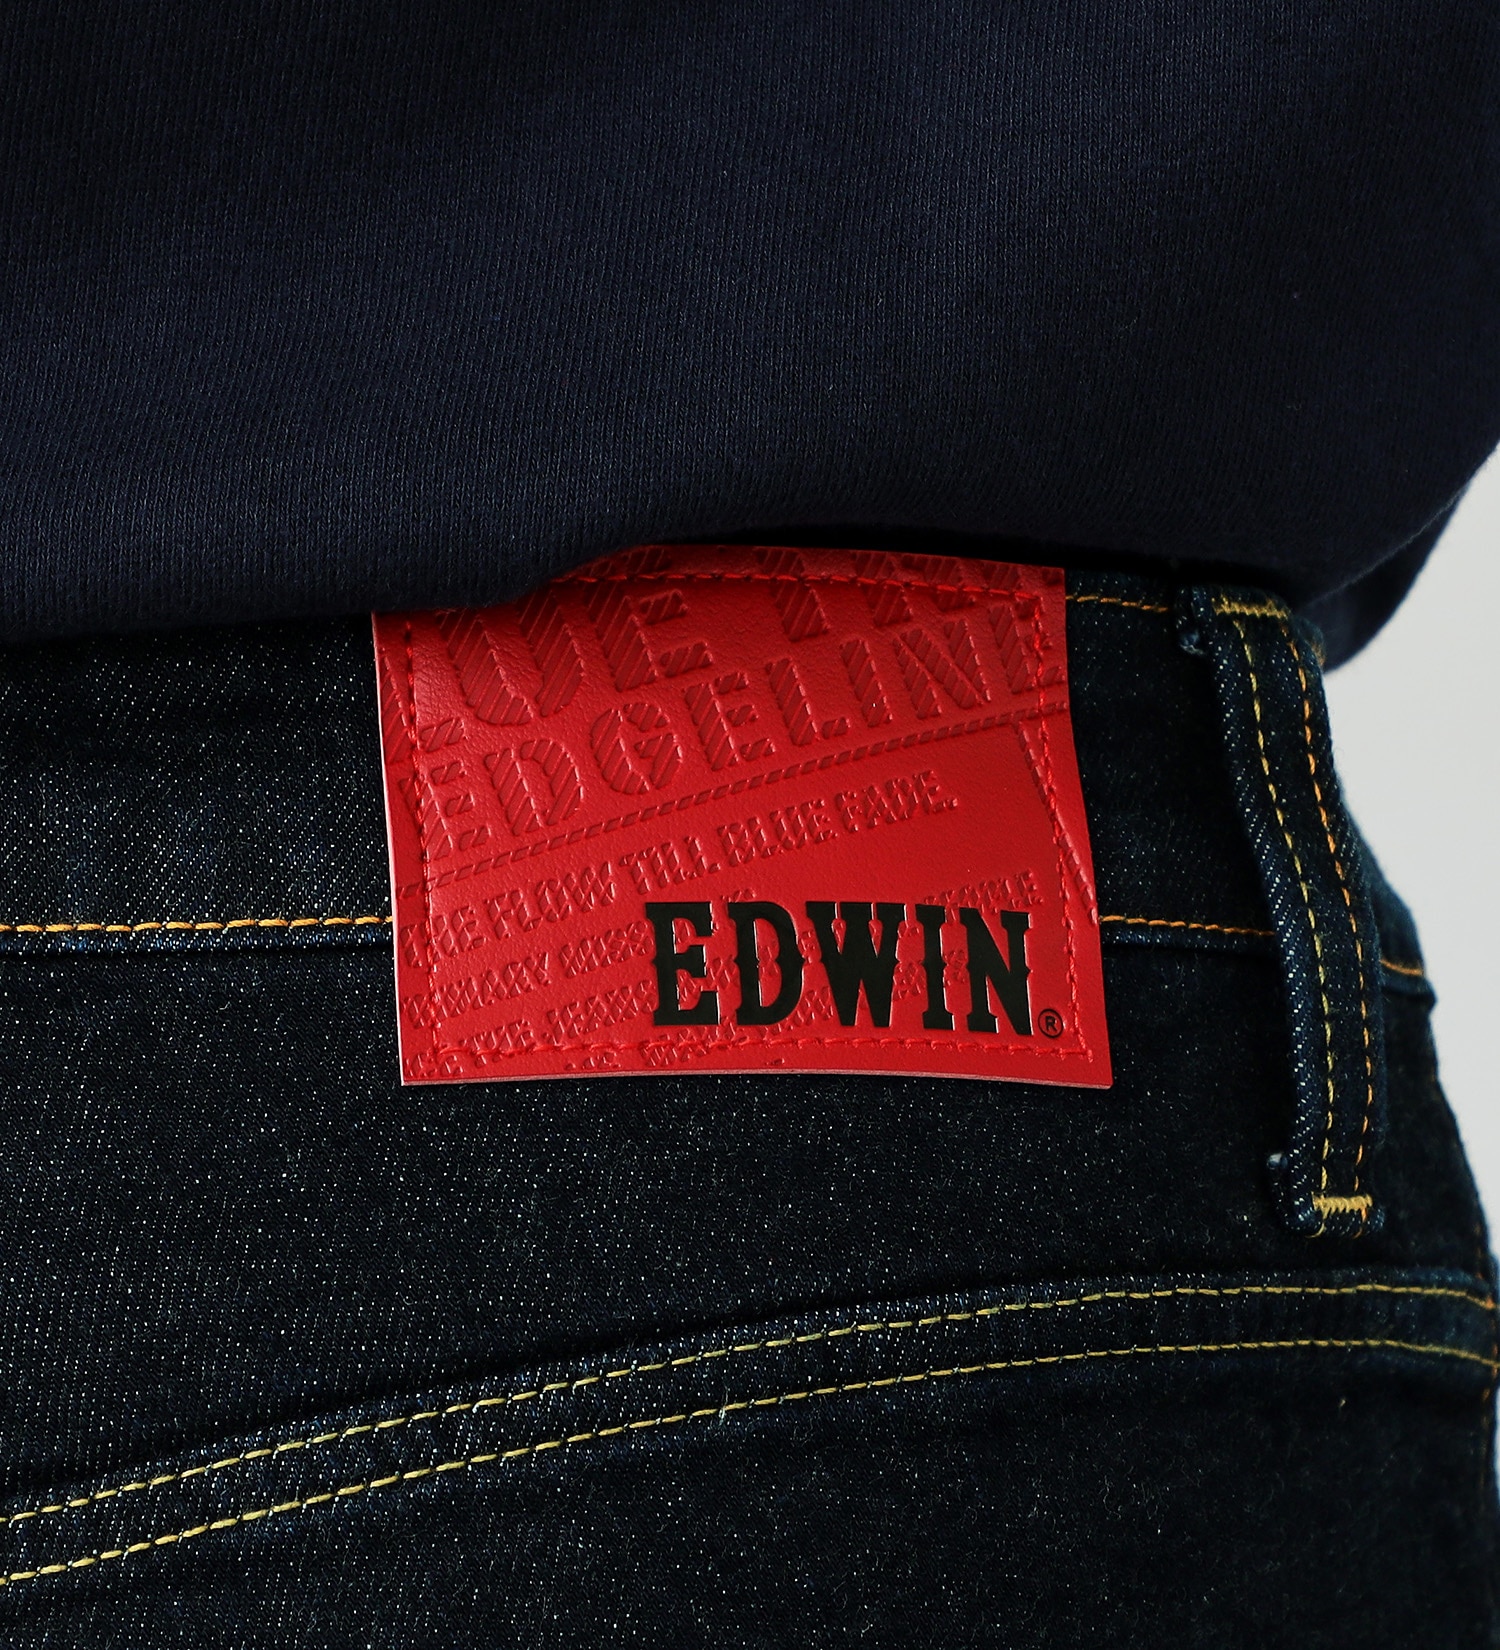 EDWIN(エドウイン)のEDGE LINE レギュラーストレートデニムジーンズ【アウトレット店舗・WEB限定】|パンツ/デニムパンツ/メンズ|インディゴブルー